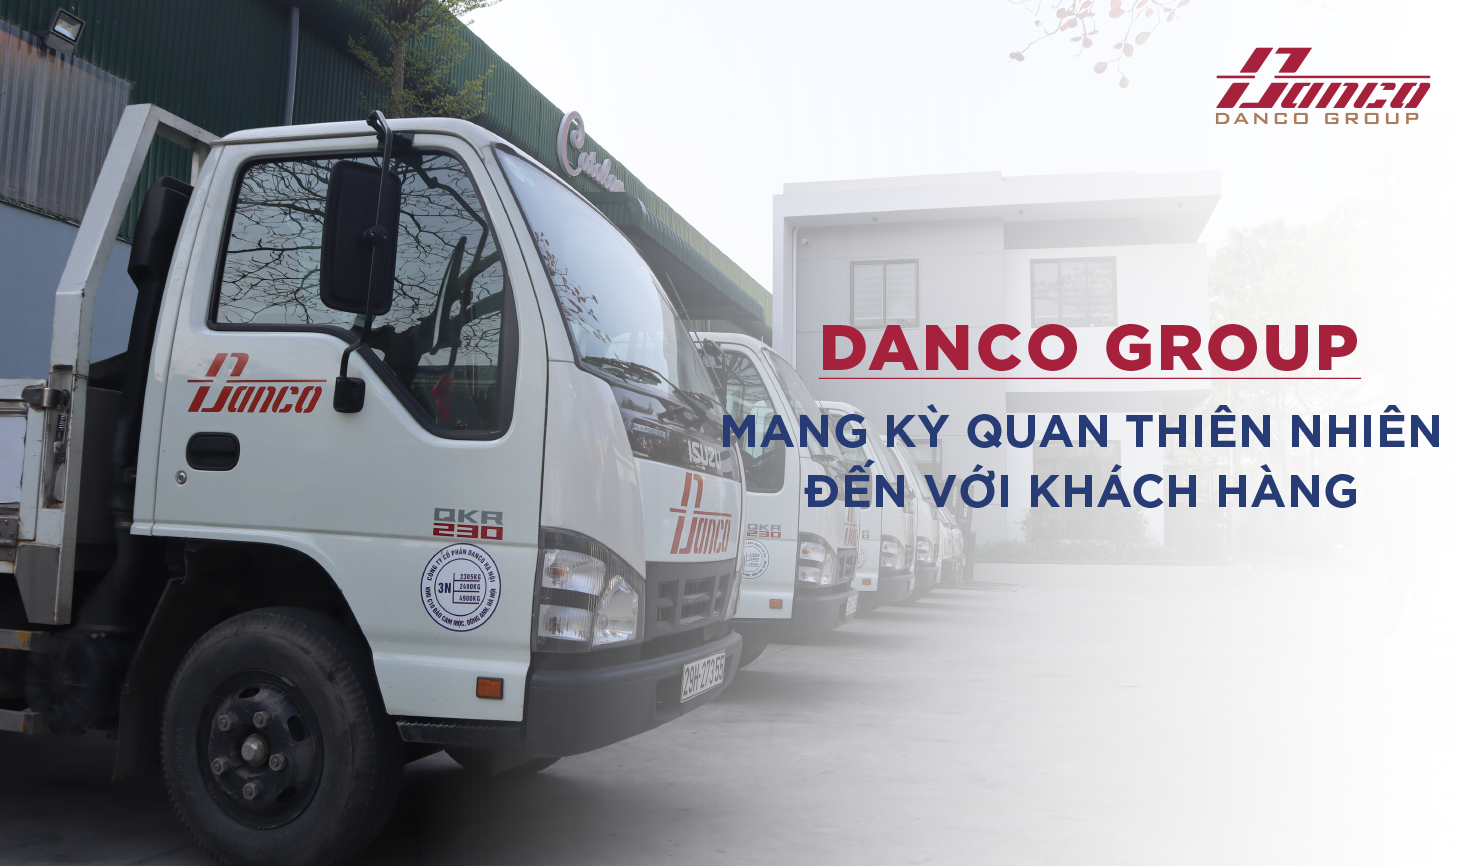 Danco Group Mang Kỳ Quan Thiên Nhiên Đến Với Khách Hàng